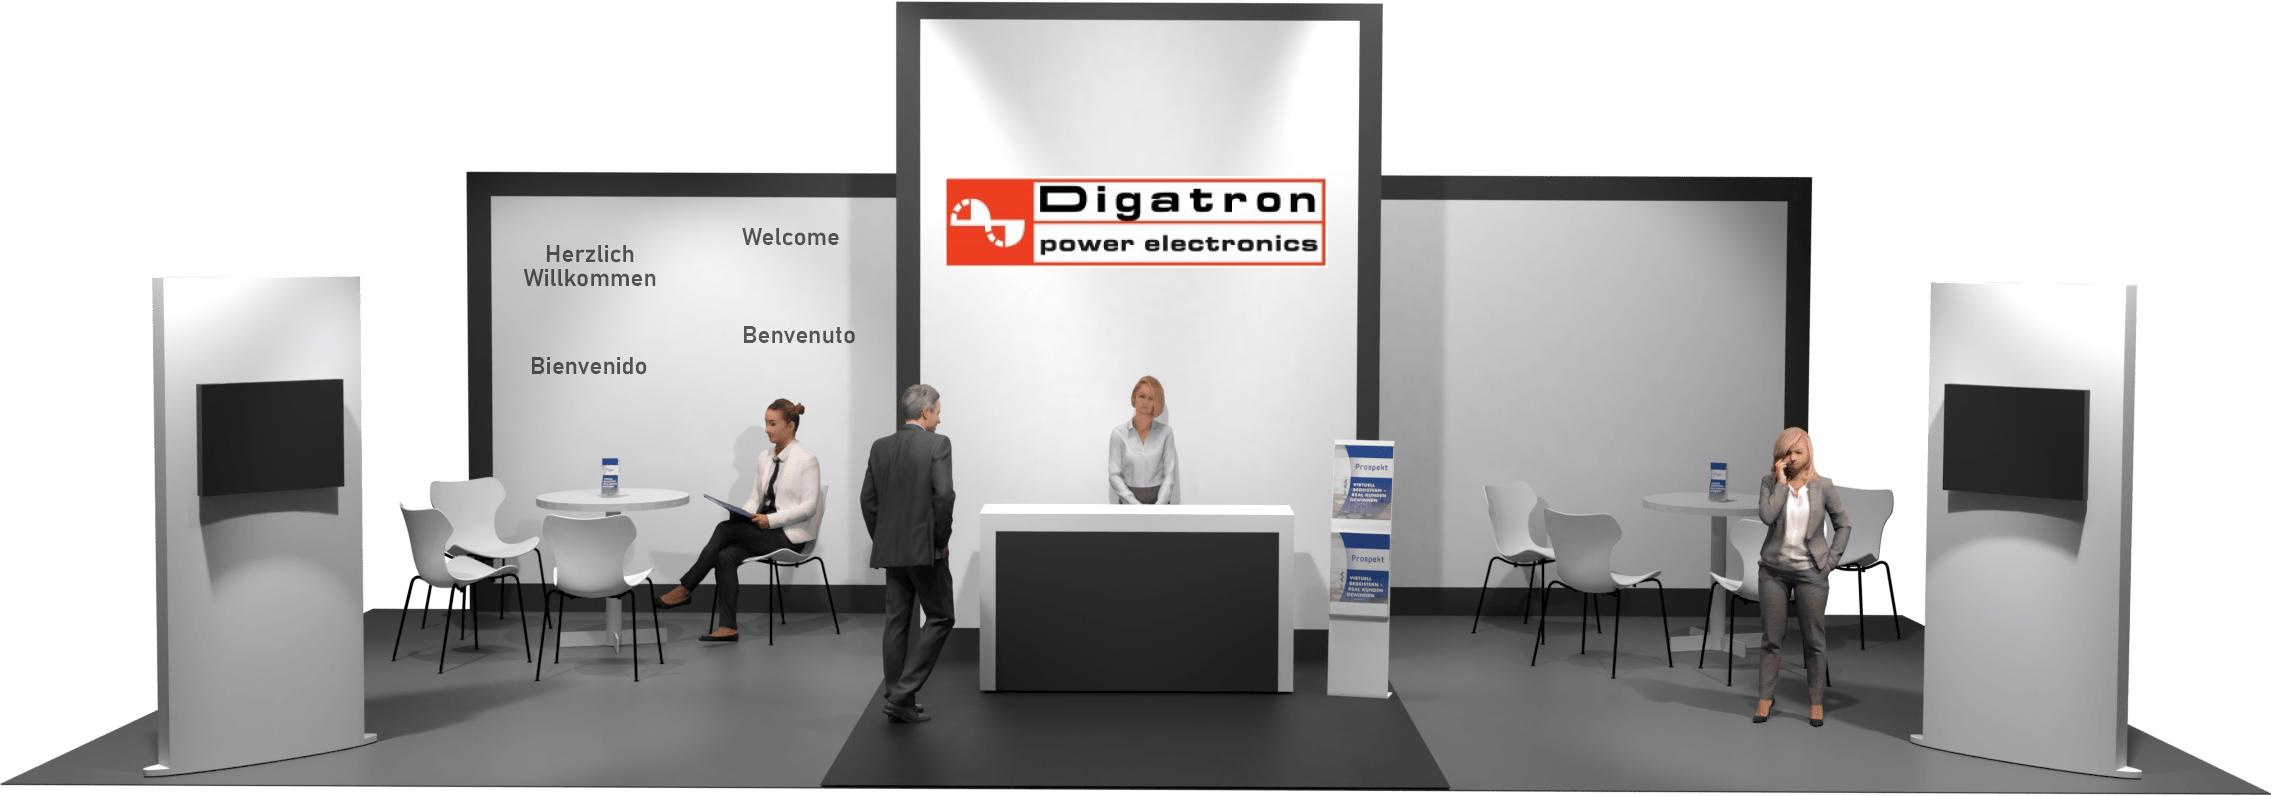 Digatron Power Electronics